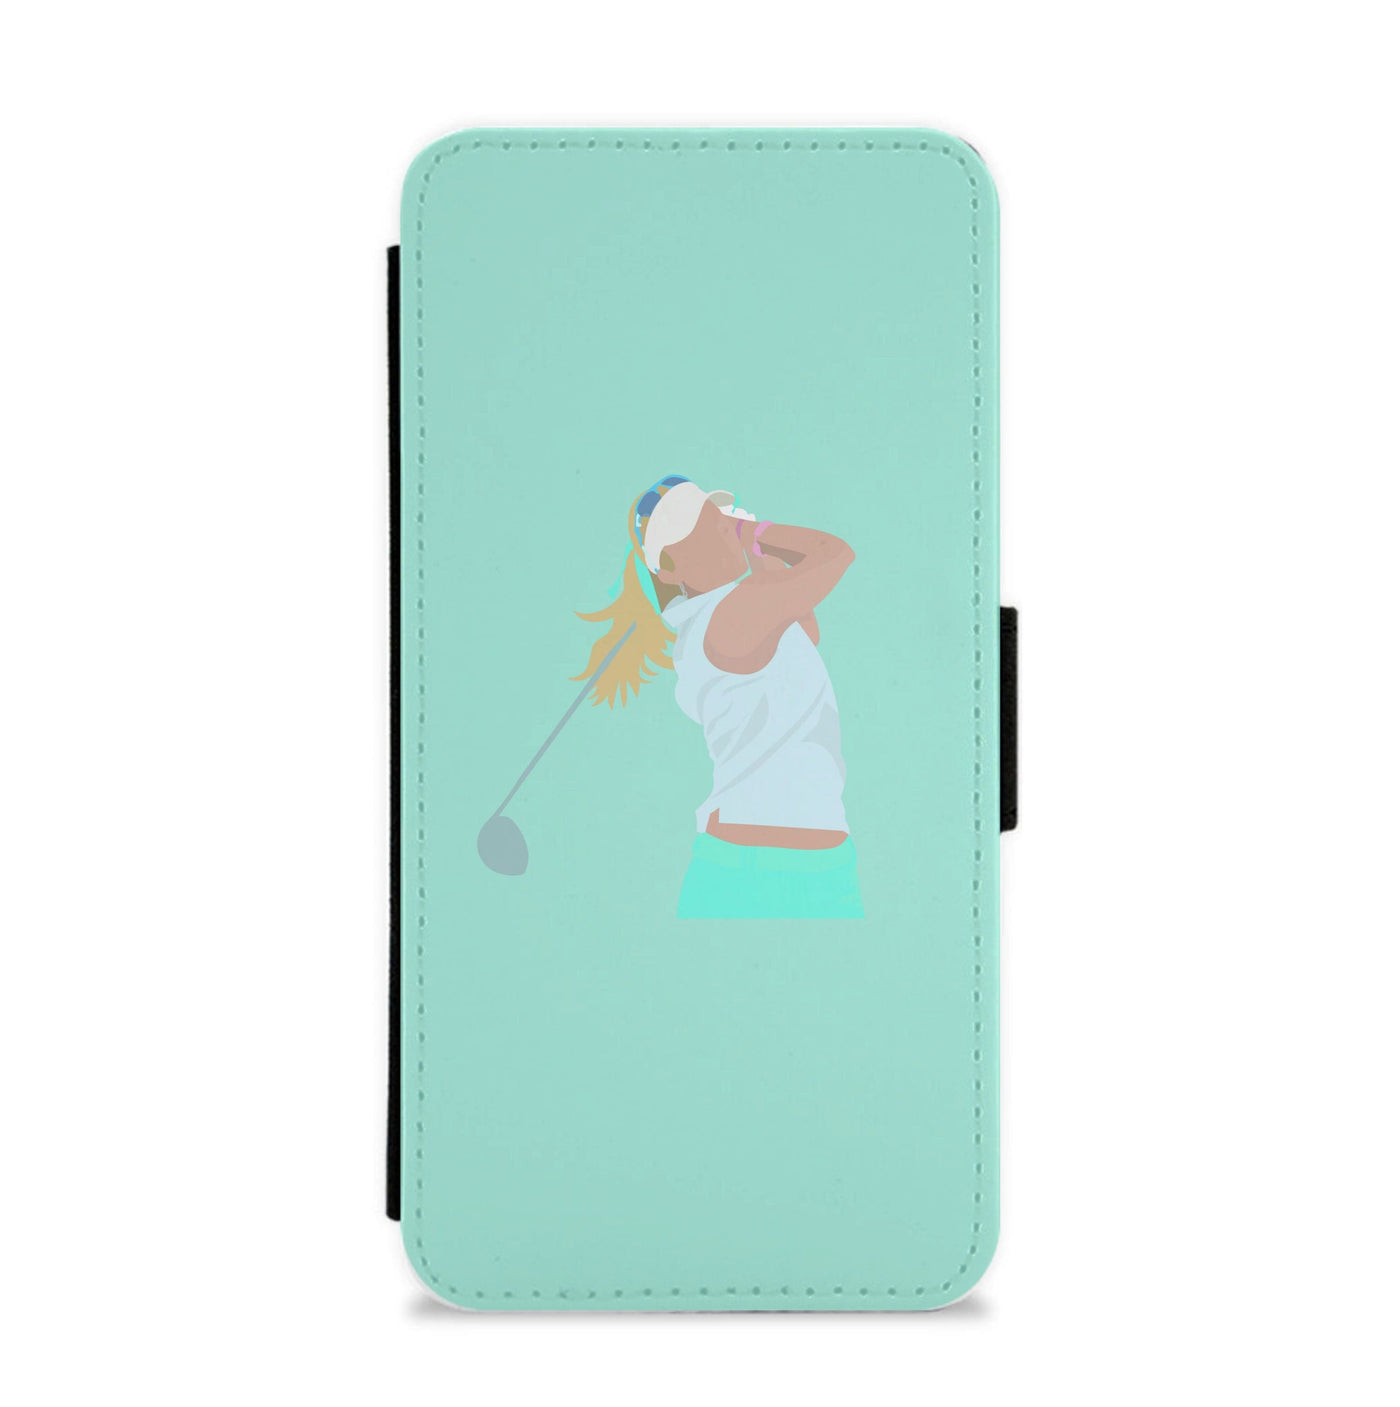 Lexi Thompson - Golf Flip / Wallet Phone Case